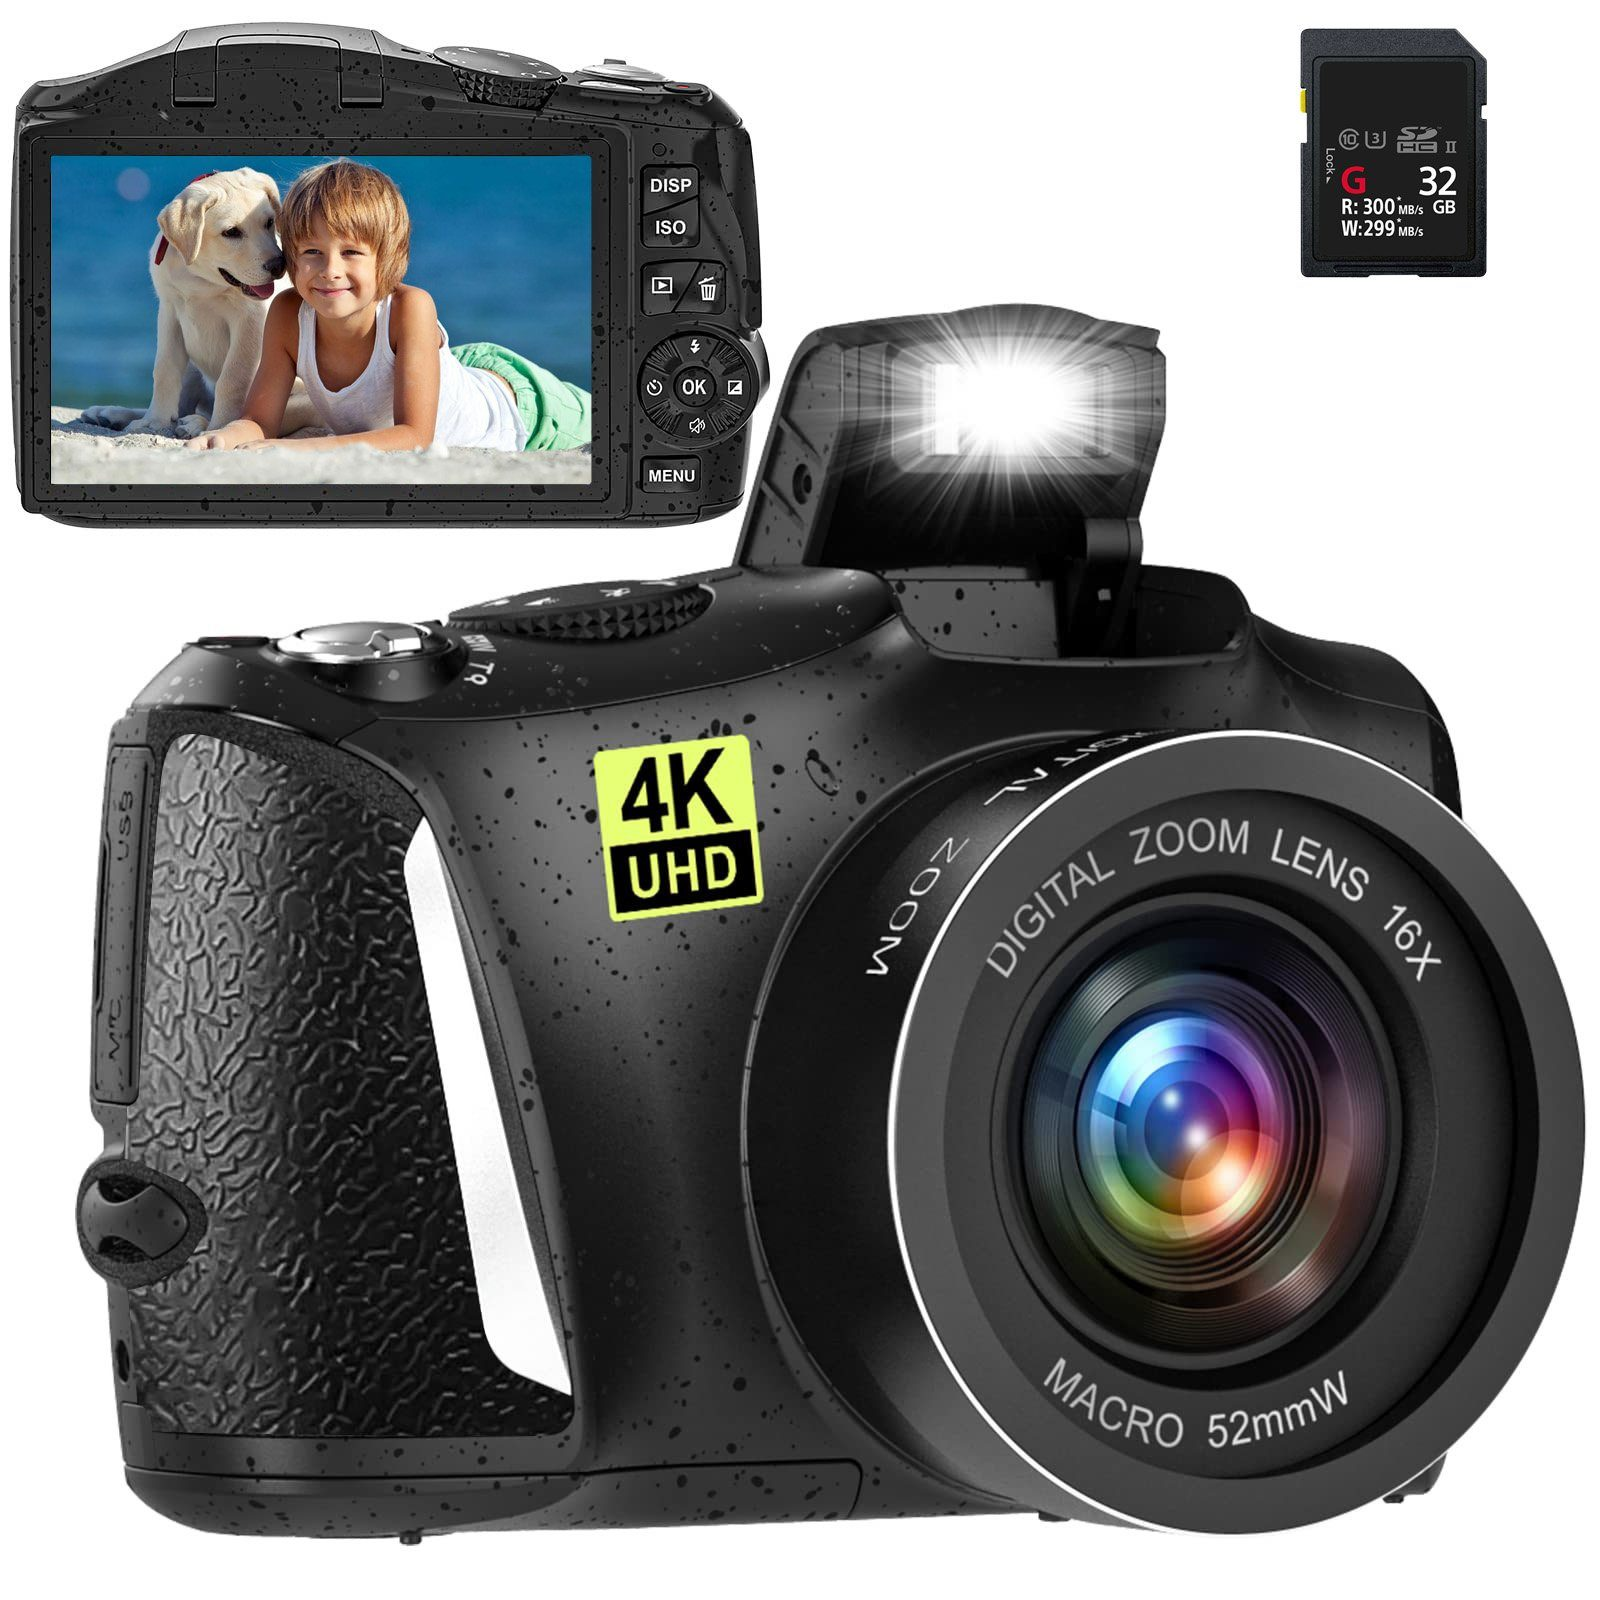 LINGDA 48 Megapixel Kompakte Digitalkamera Schwarz, – Digitalkamera 3Zoll Kameraauflösung Schwarz